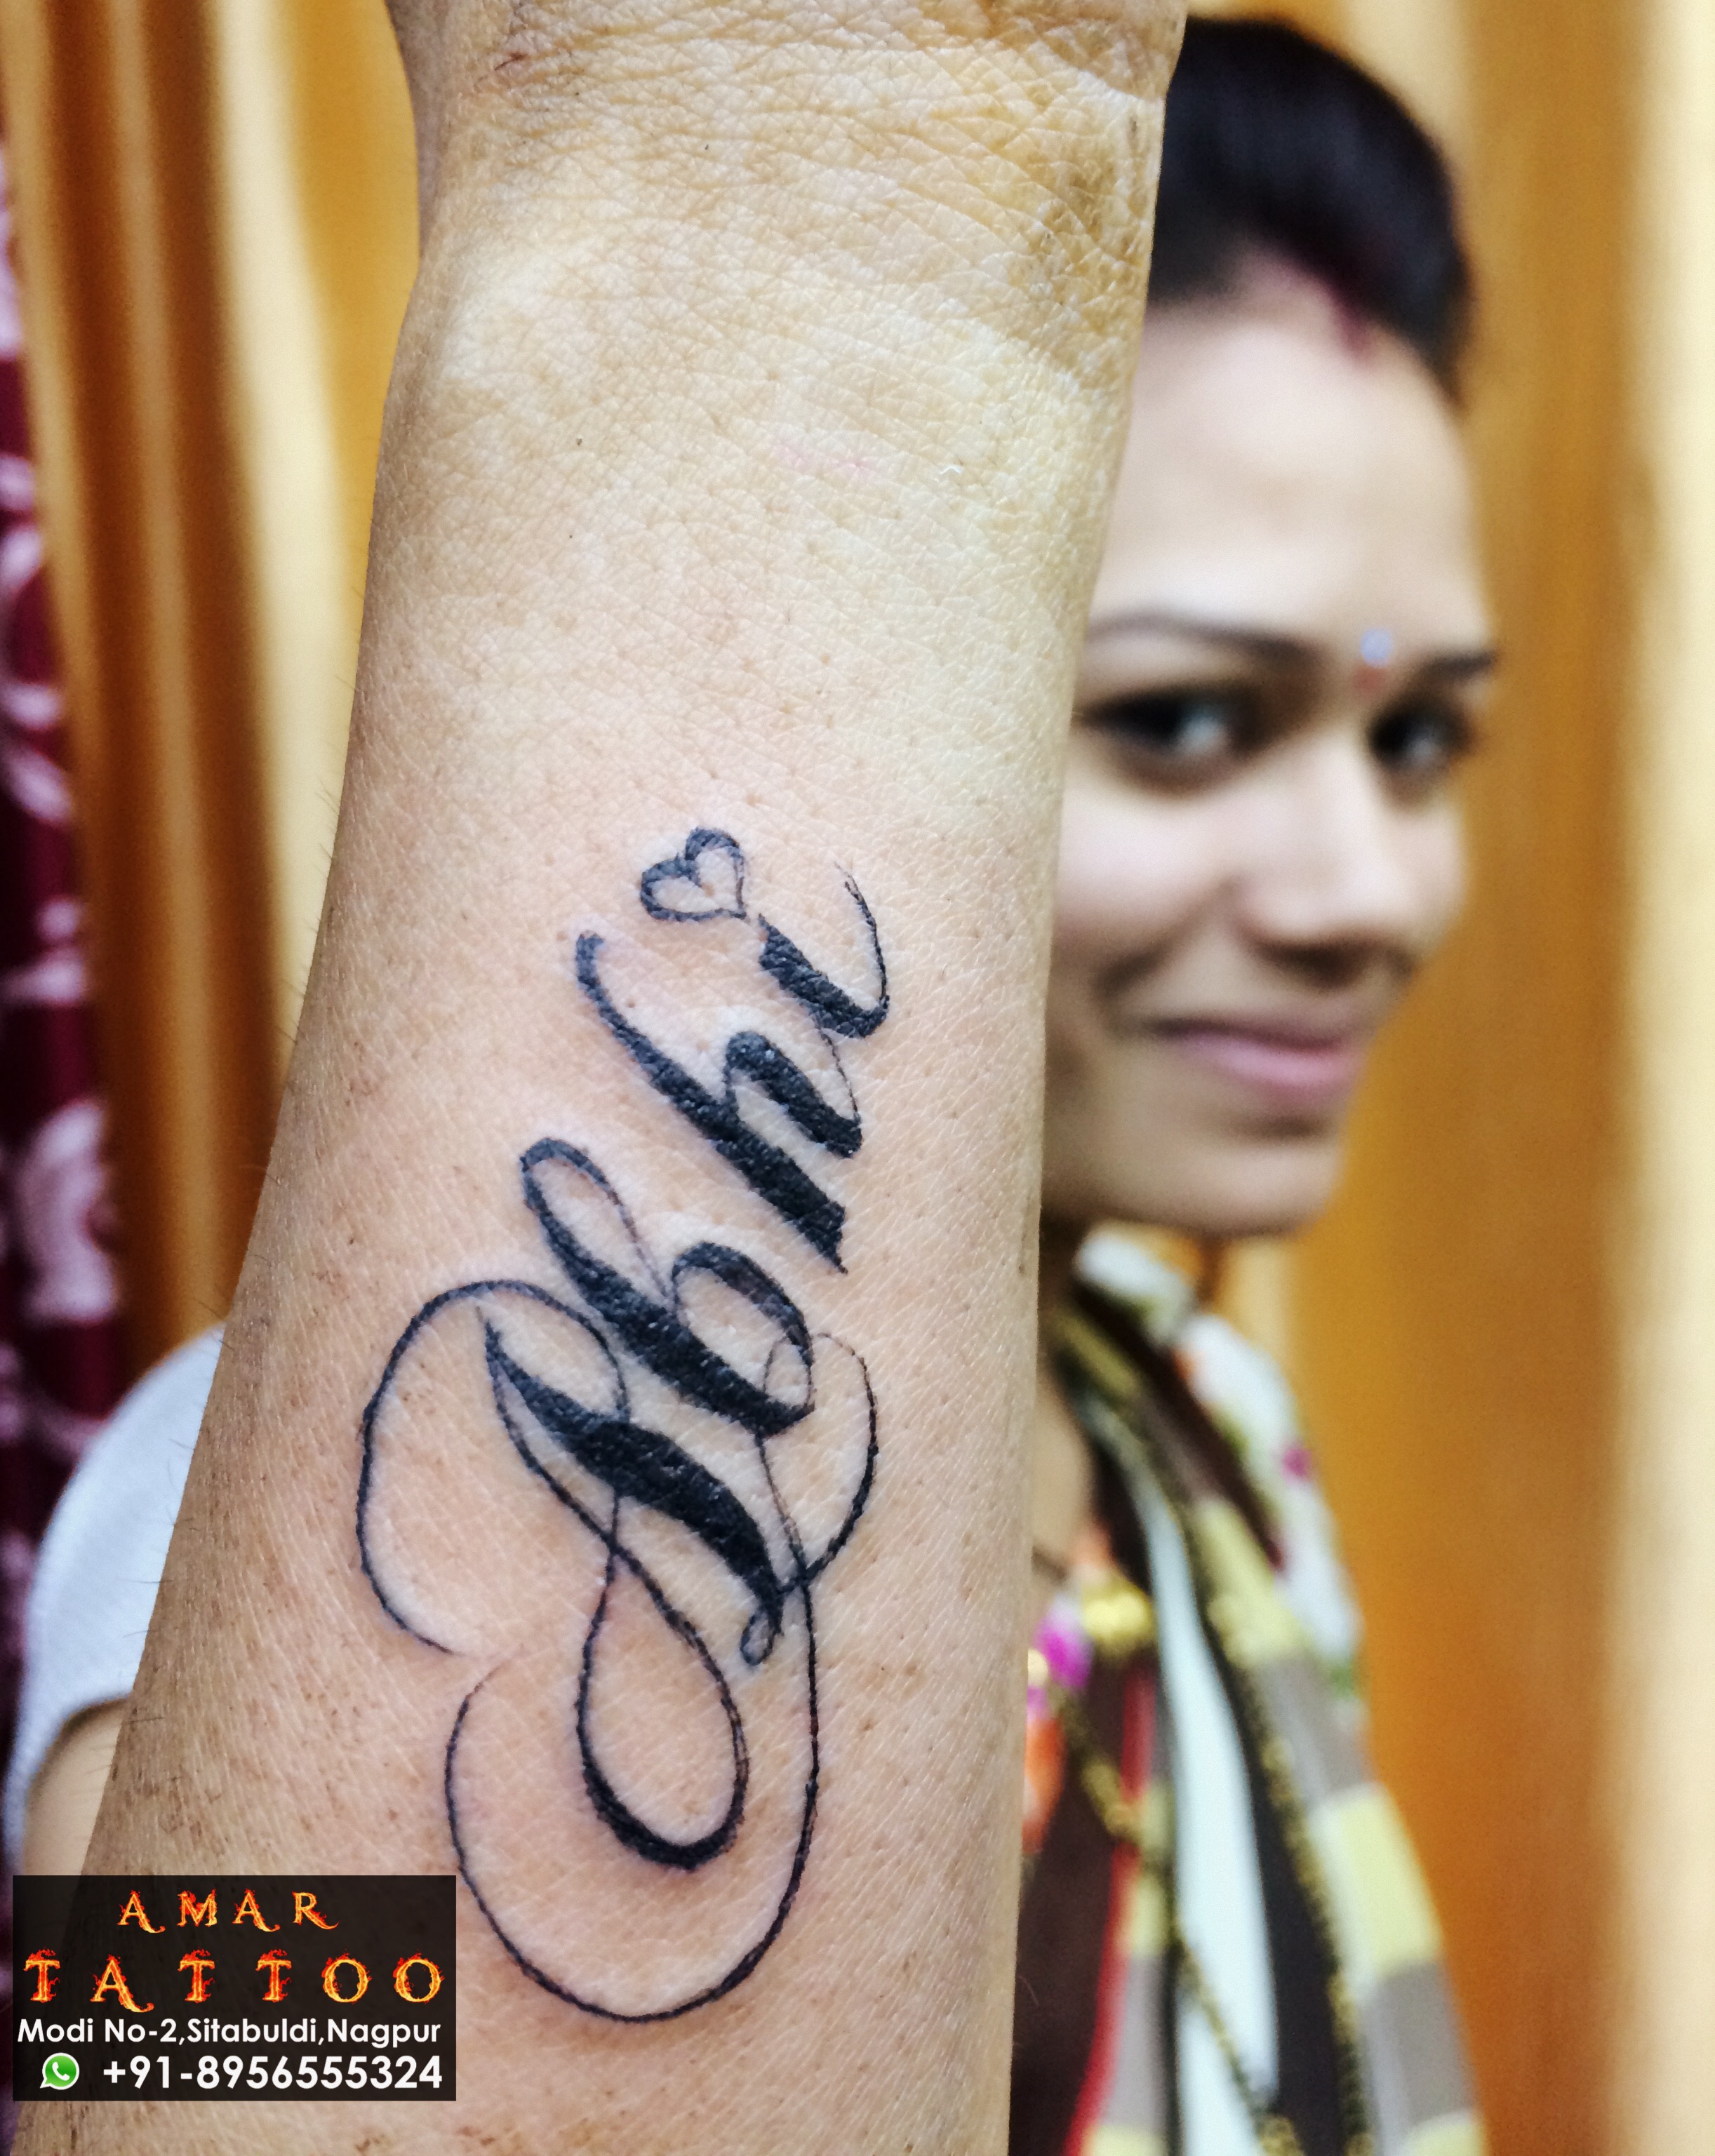 Abhi Chavan | Best Tattoo Artists at Ace Tattooz in Mumbai India